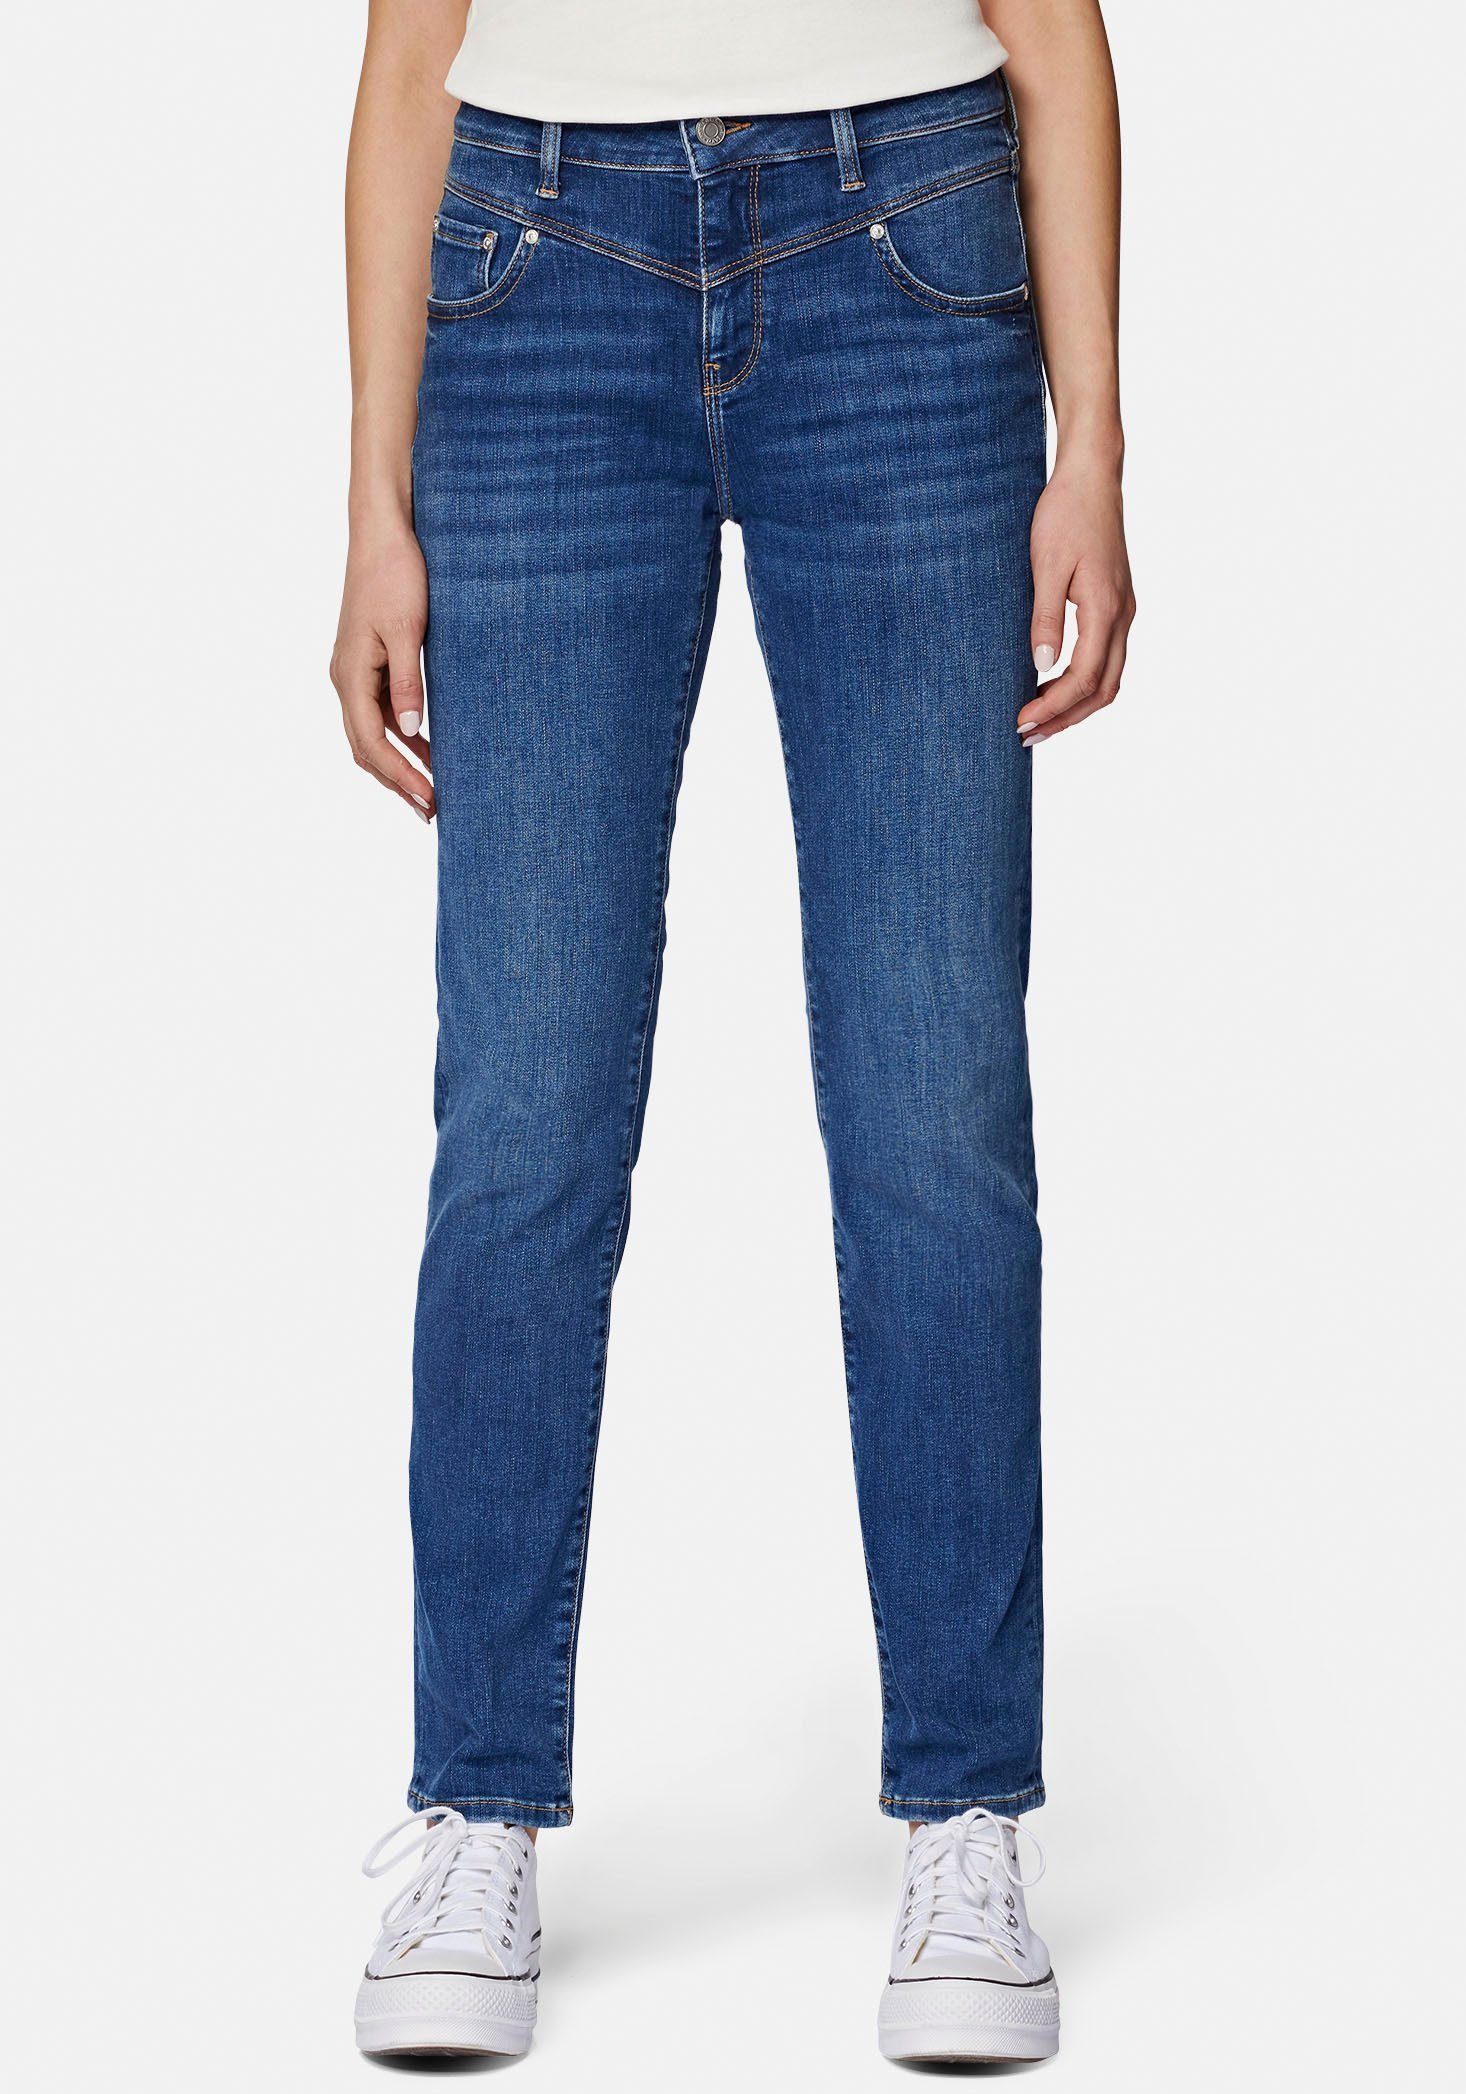 hochwertiger Slim-fit-Jeans trageangenehmer dank Stretchdenim Mavi Verarbeitung mid blue